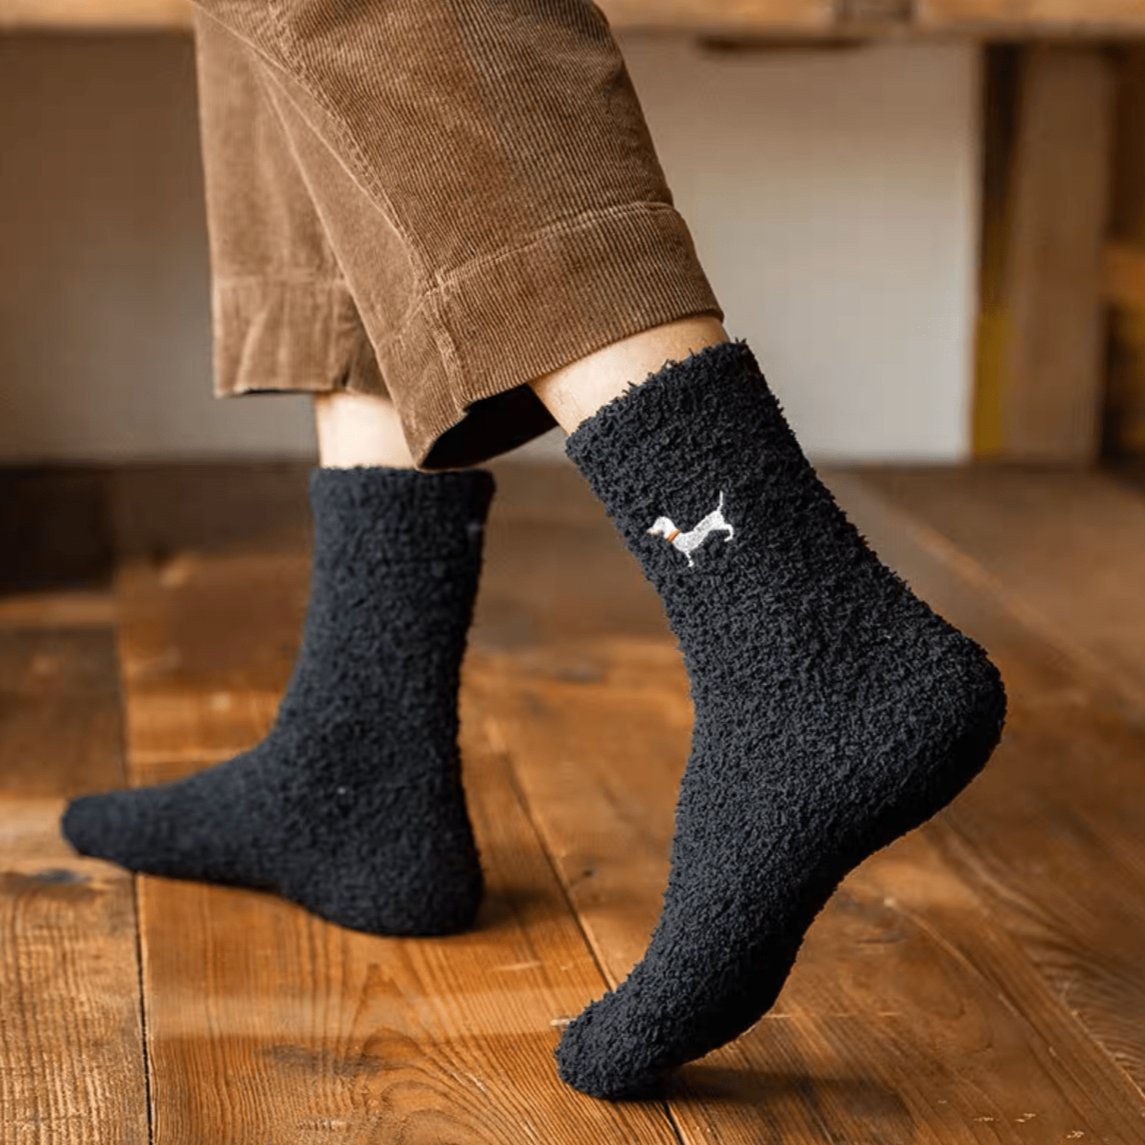 Fluffy Dachshund Socks The Doxie World